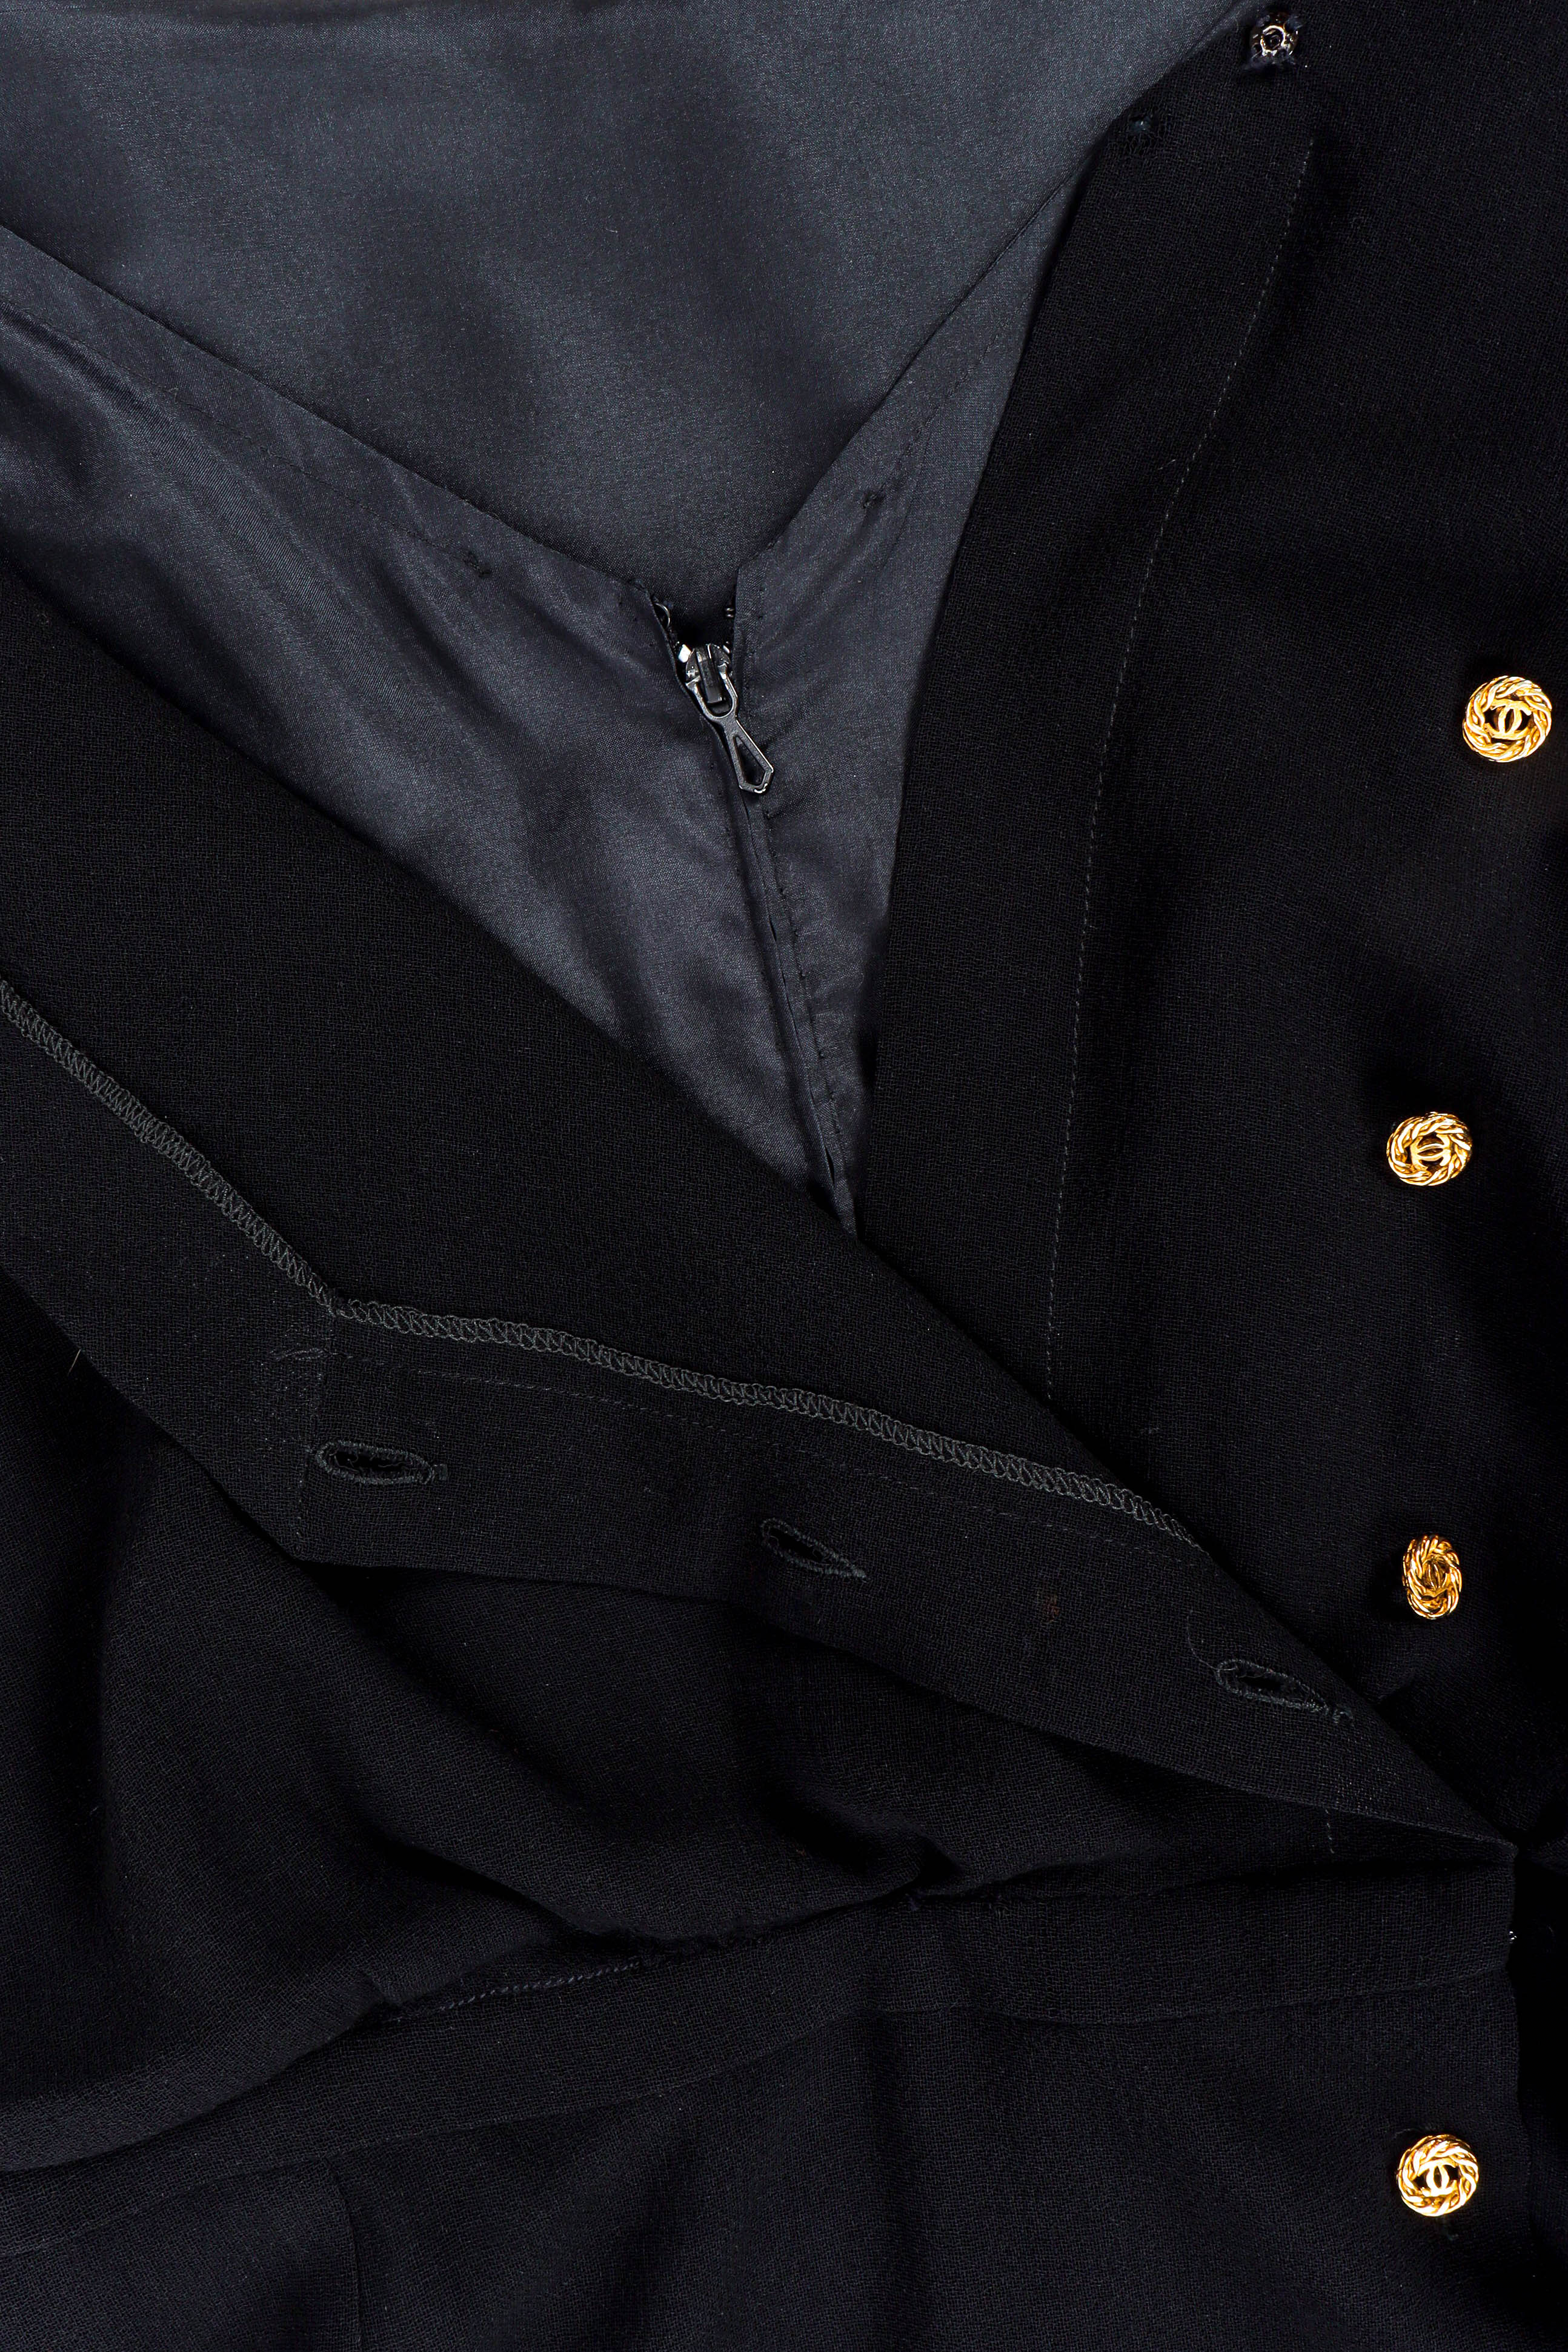 Vintage Chanel CC Pleated Wrap Dress front buttons/zipper@ Recess LA